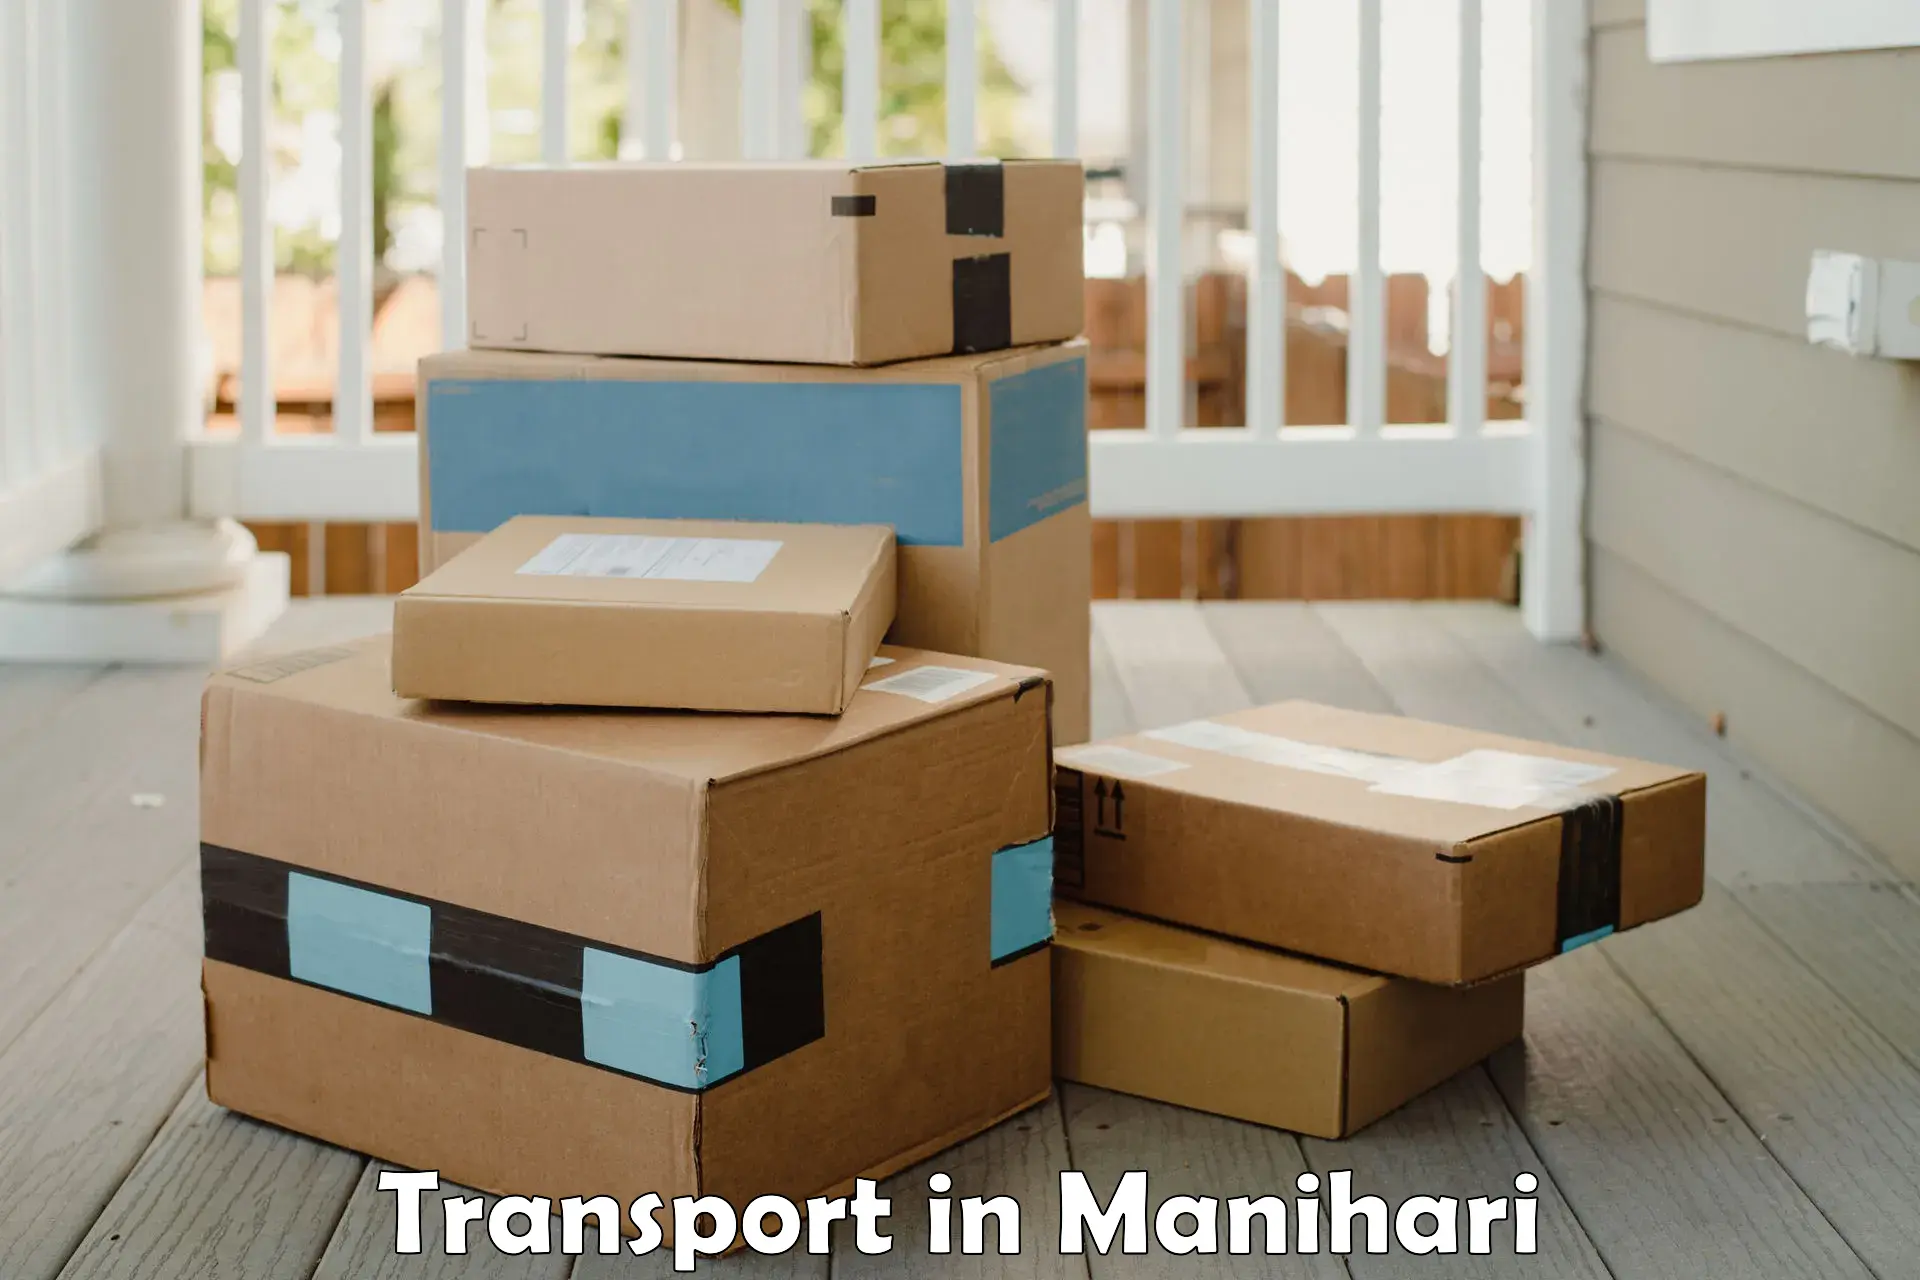 Container transport service in Manihari